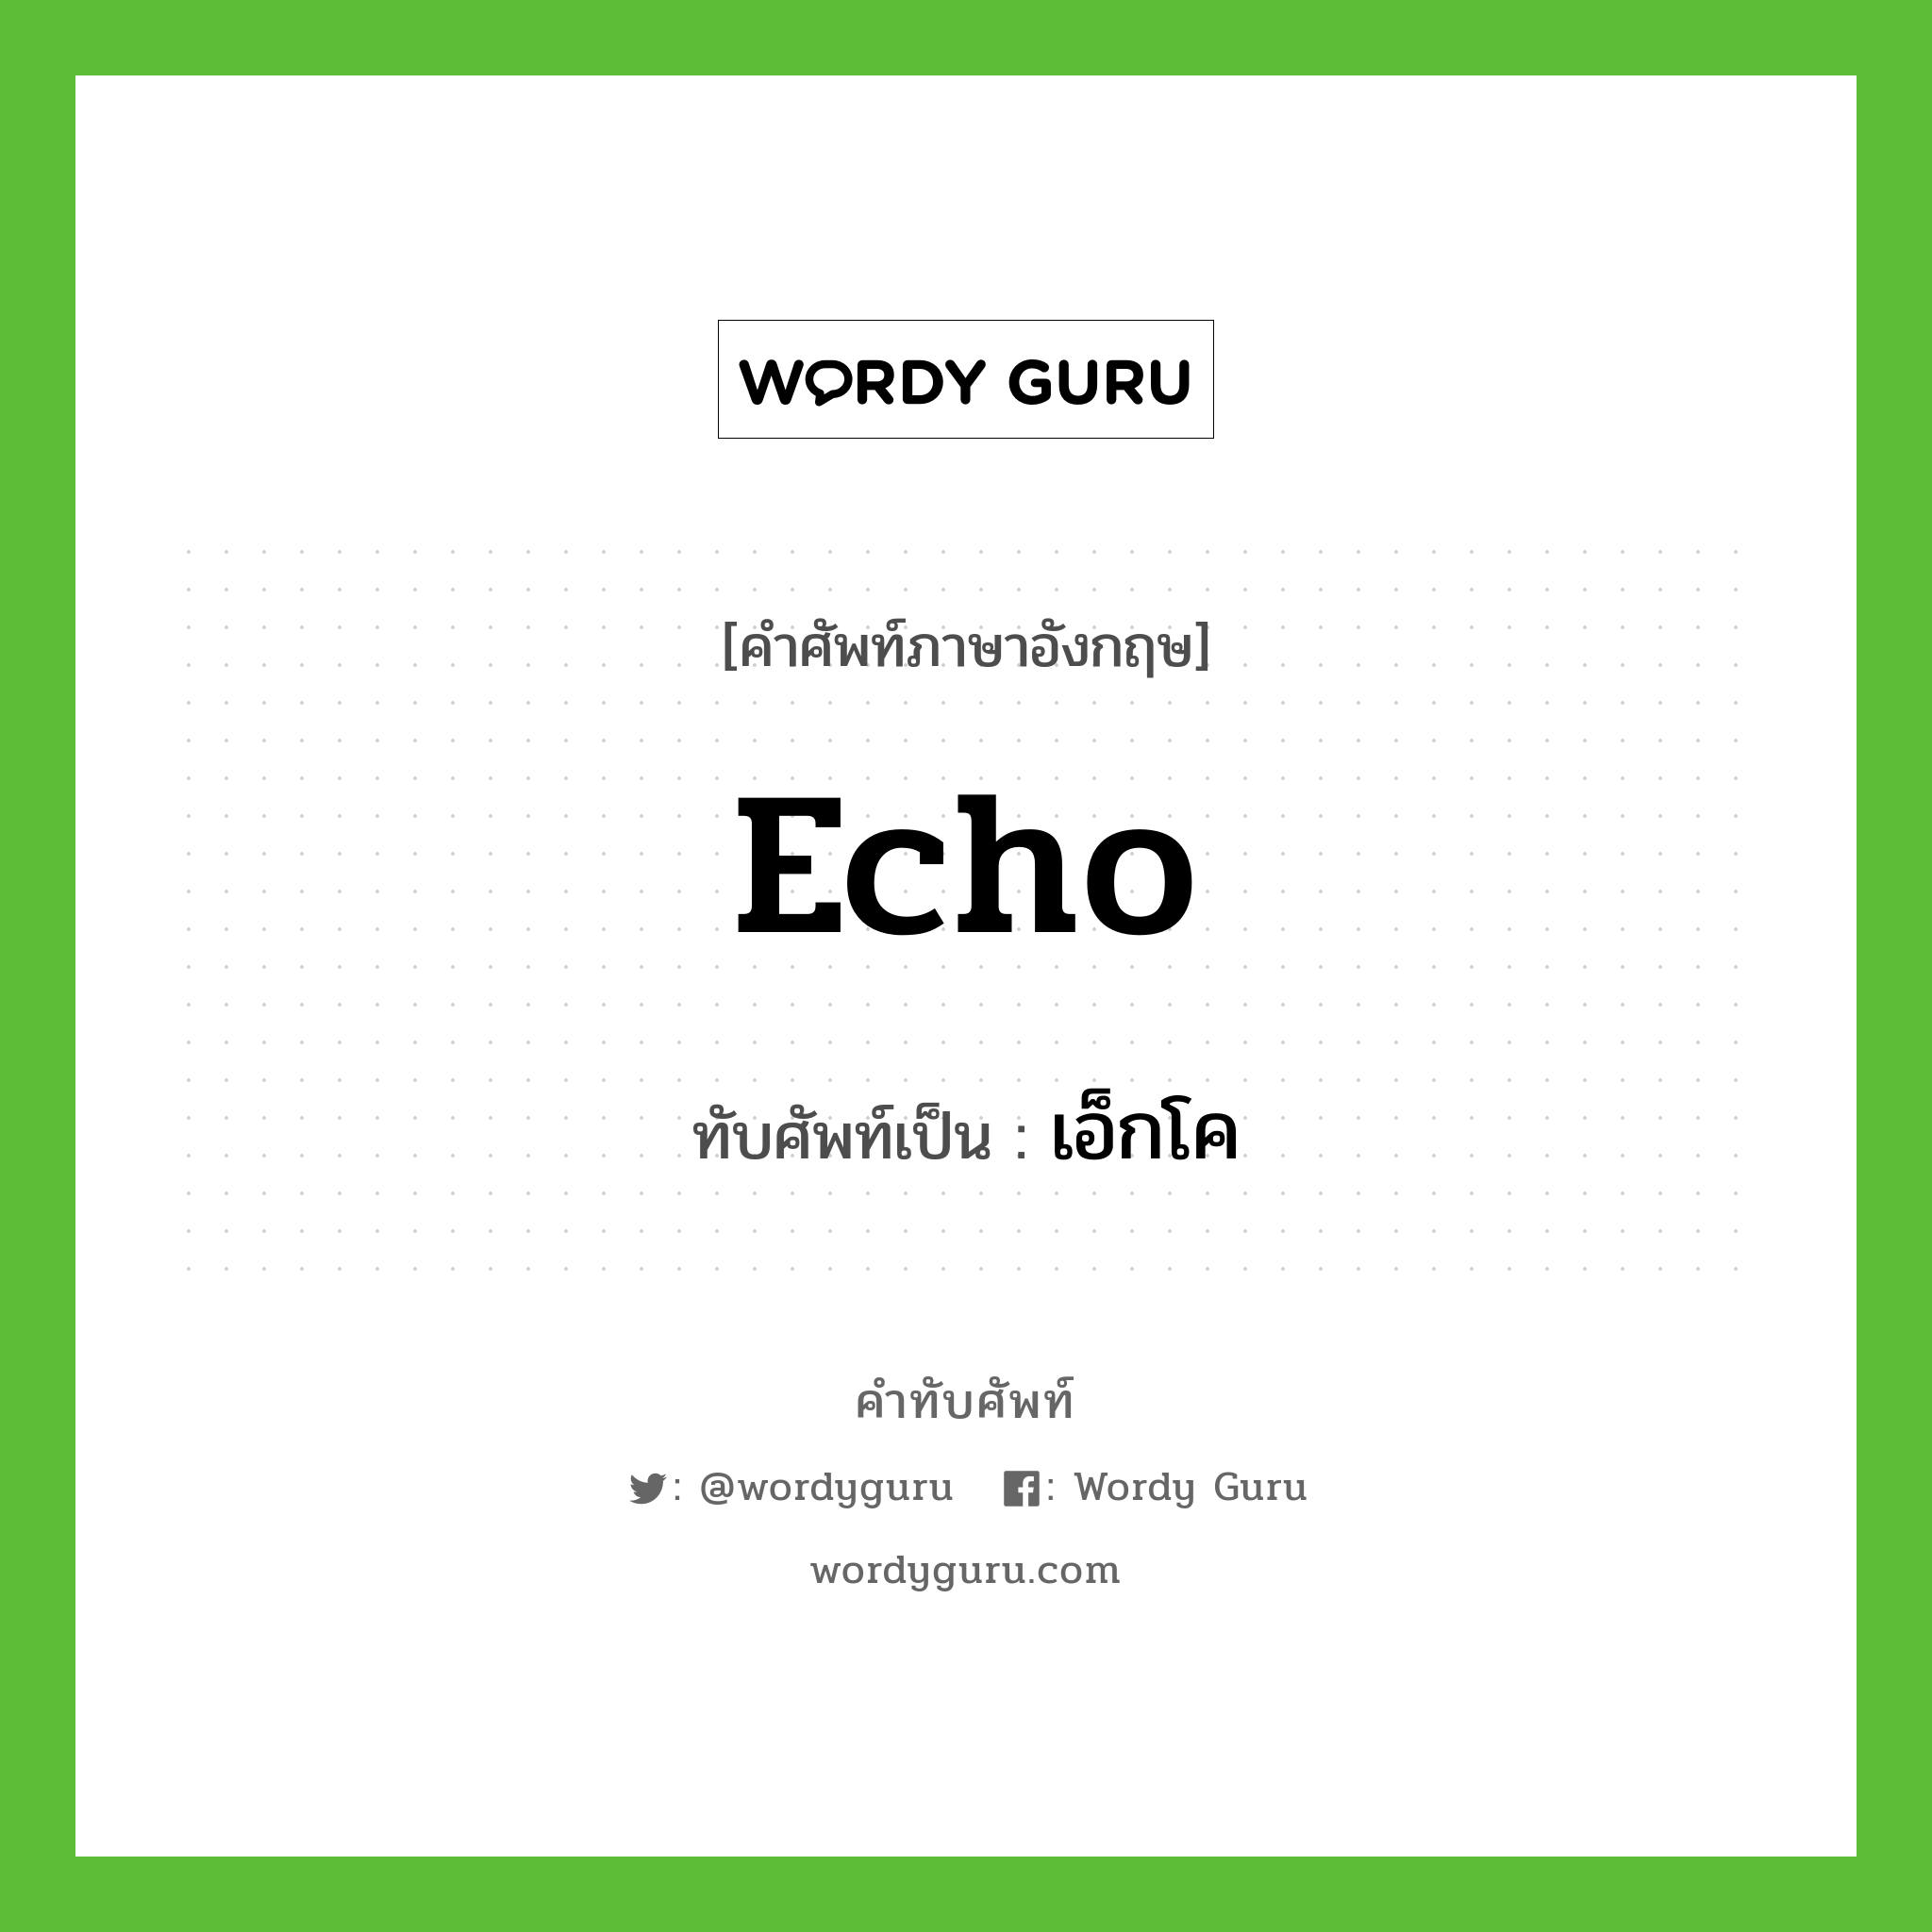 echo เขียนเป็นคำไทยว่าอะไร?, คำศัพท์ภาษาอังกฤษ echo ทับศัพท์เป็น เอ็กโค